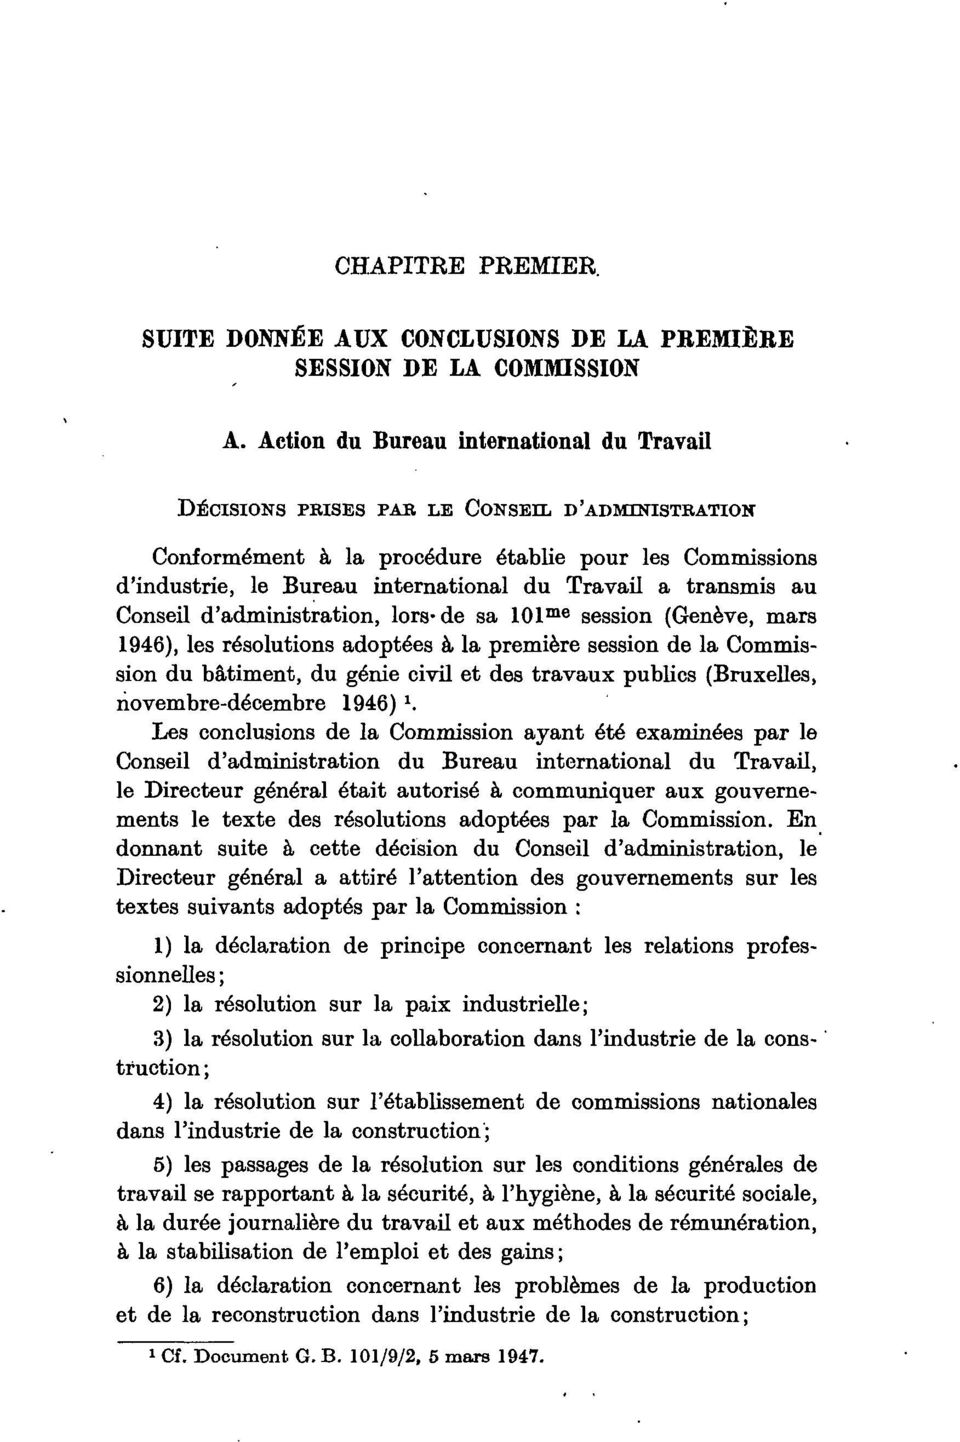 transmis au Conseil d'administration, lors-de sa 101 me session (Genève, mars 1946), les résolutions adoptées à la première session de la Commission du bâtiment, du génie civil et des travaux publics